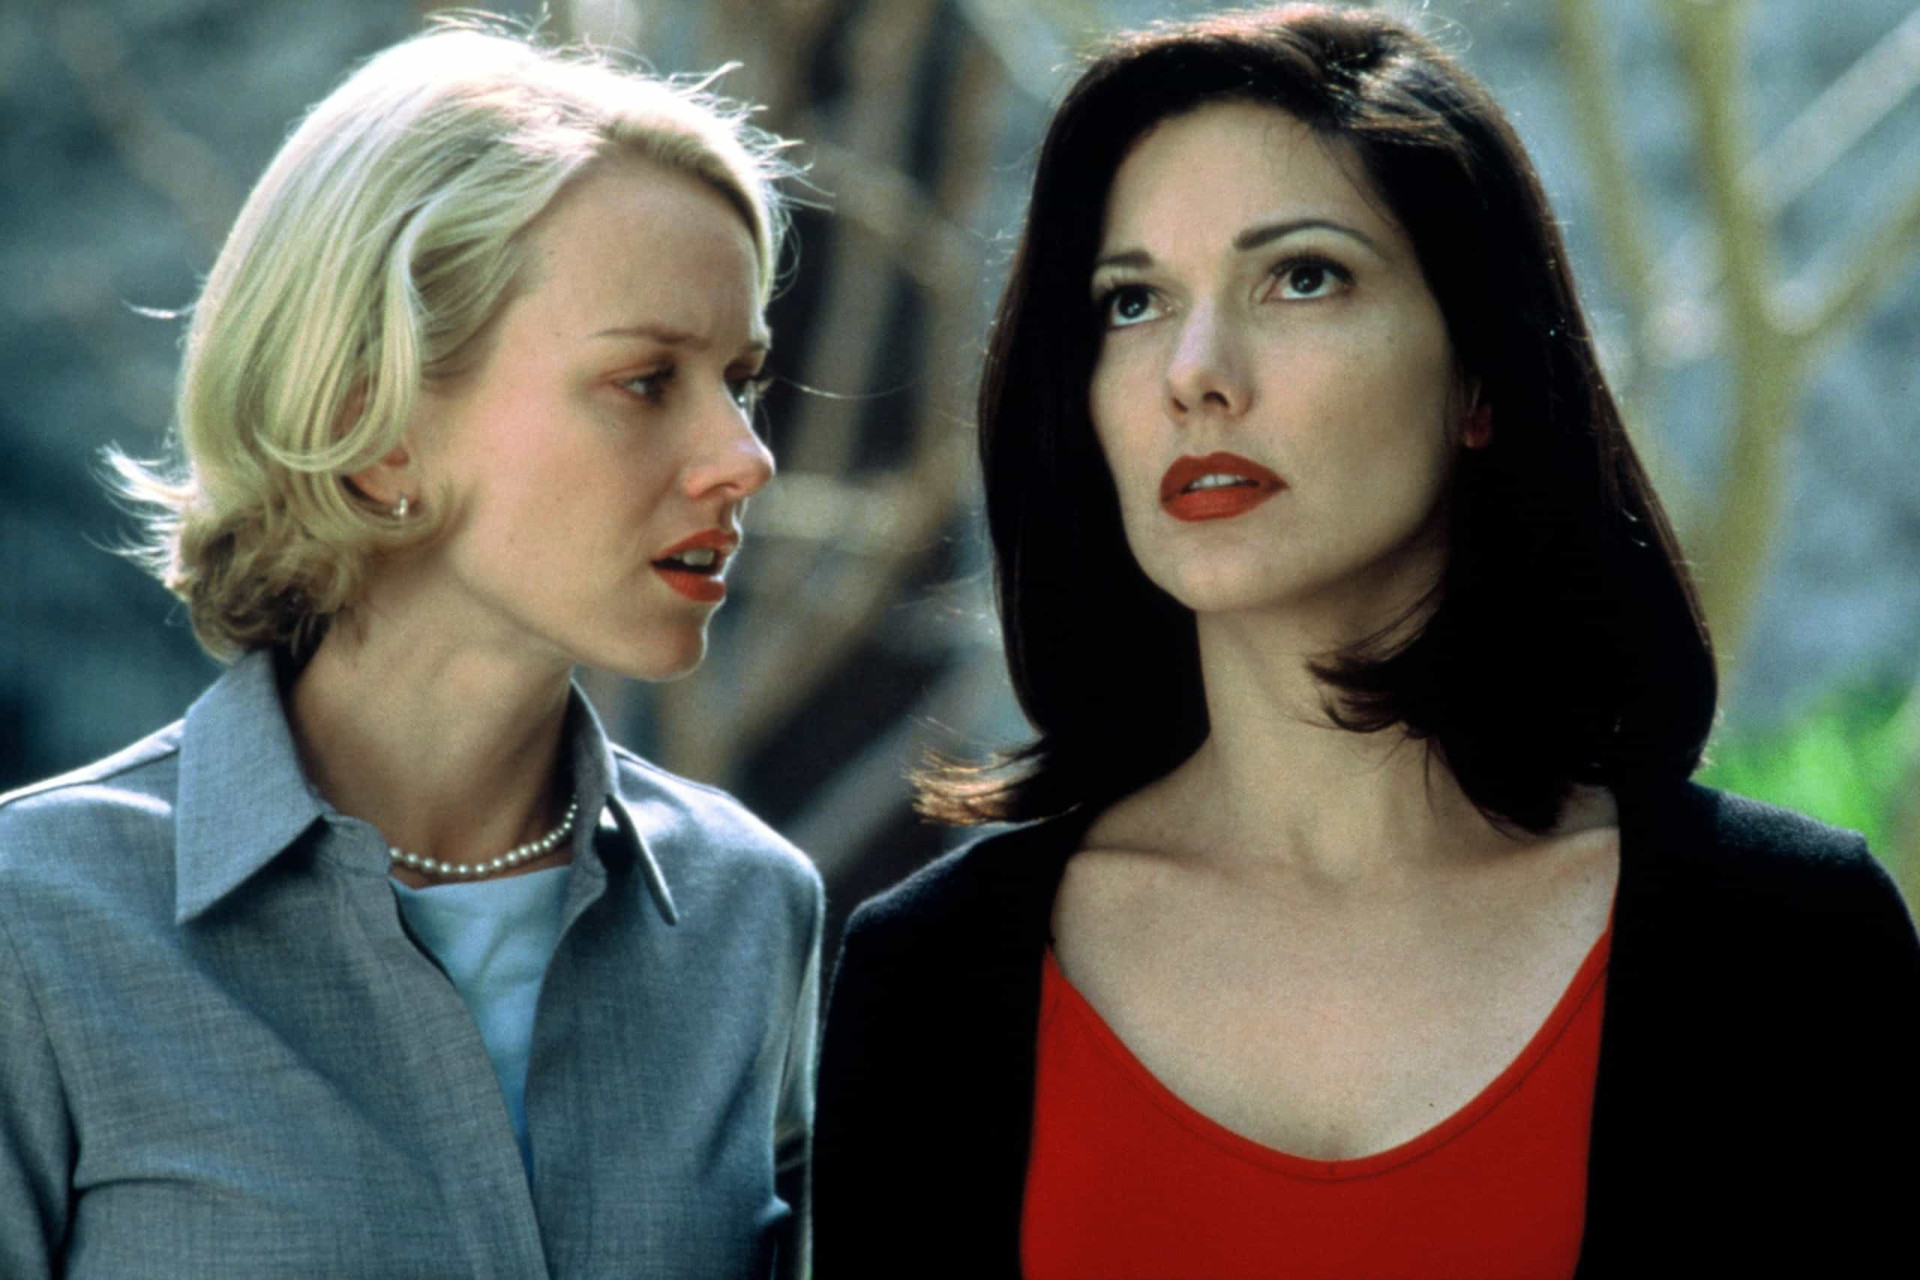 <p>In "Mulholland Drive – Straße der Finsternis" (2001) spielt Laura Harring eine Frau, die an Amnesie leidet und sich mit einer jungen Schauspielerin (Naomi Watts) einlässt, die versucht, ihren Traum zu verwirklichen, Schauspielerin in Hollywood zu werden. Es gibt eine Szene, die beide in einem intensiven sinnlichen Moment zeigt.</p><p>Sie können auch mögen:<a href="https://de.starsinsider.com/n/351521?utm_source=msn.com&utm_medium=display&utm_campaign=referral_description&utm_content=308004v1"> Diese beeindruckenden Tiere sind dem Aussterben nahe</a></p>